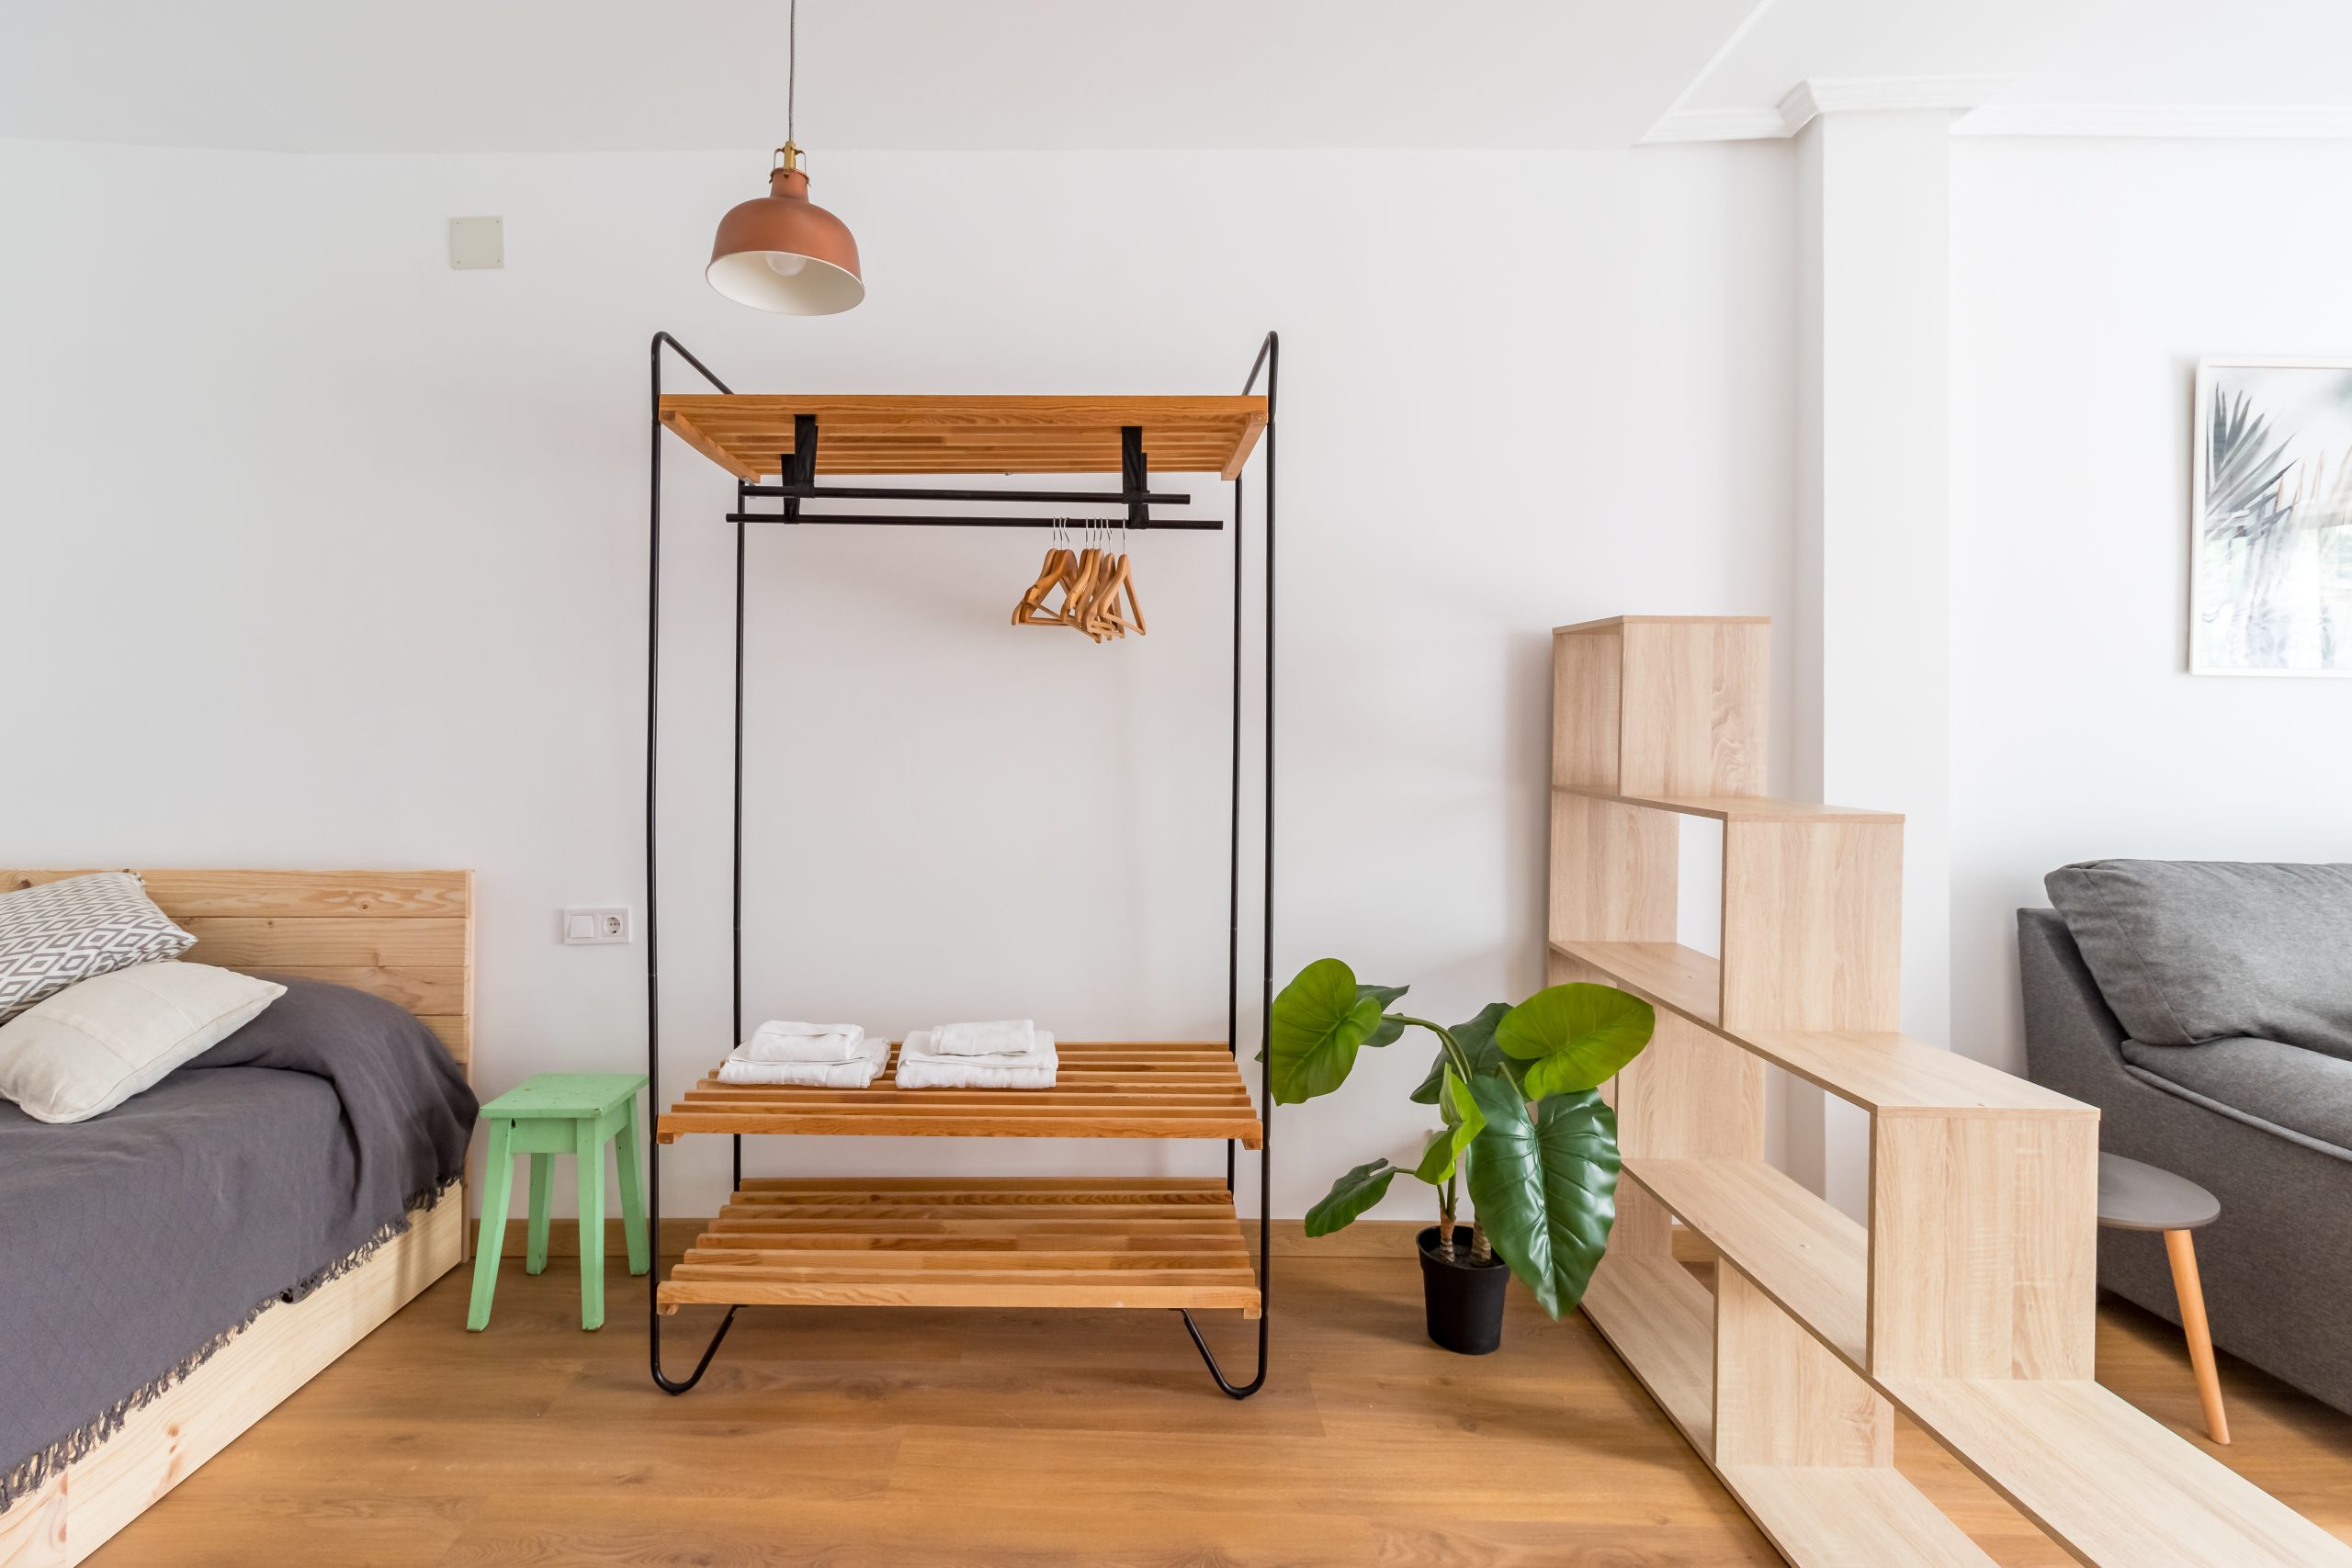 studio for rent in Santander -bedroom